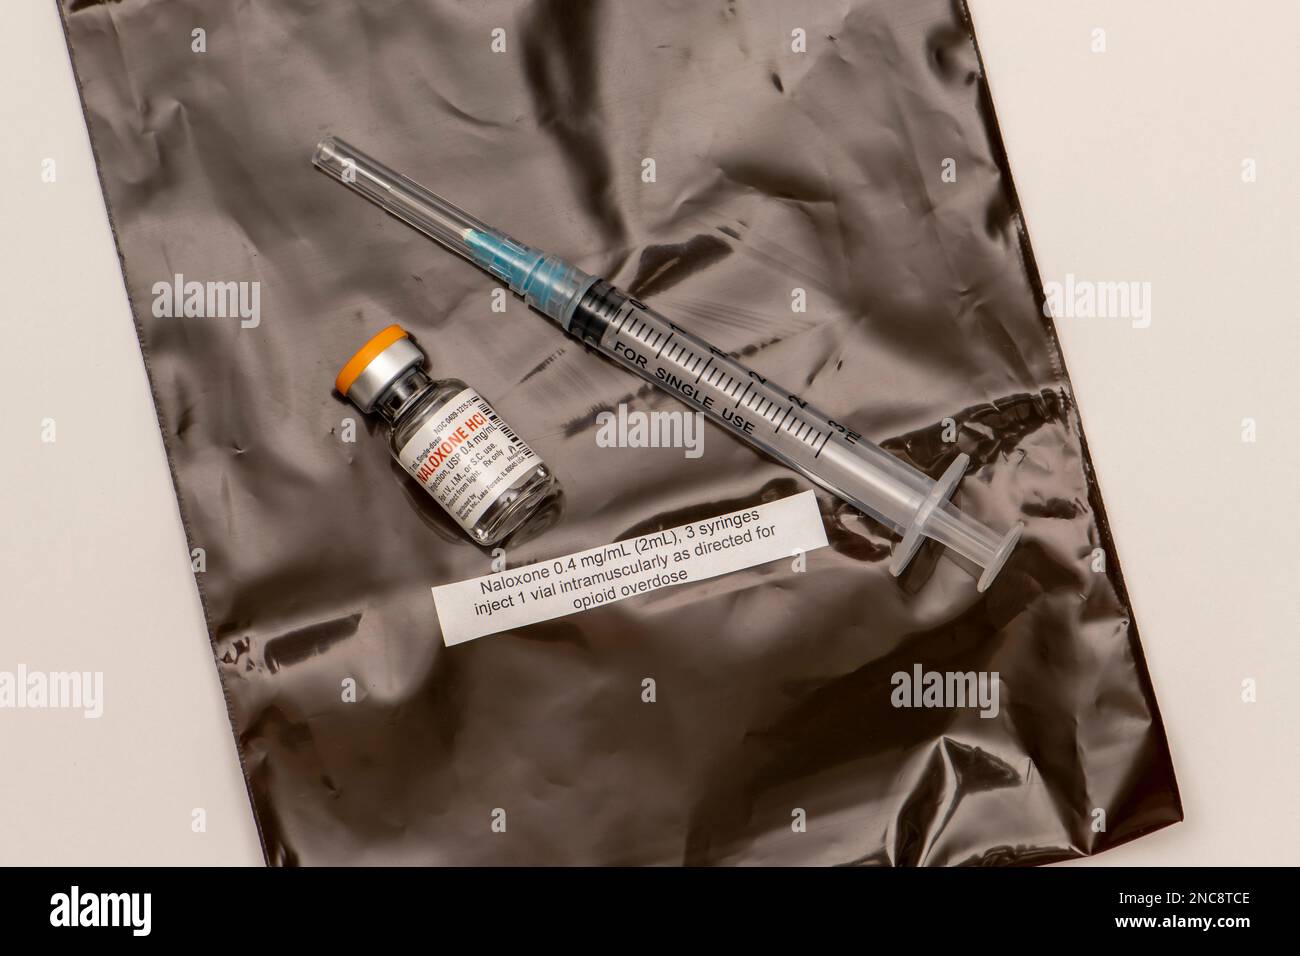 Kit de naloxone avec instructions sur la façon d'administrer le tir. La naloxone est un médicament qui sauve la vie qui peut inverser un surdosage d'opioïdes. Banque D'Images